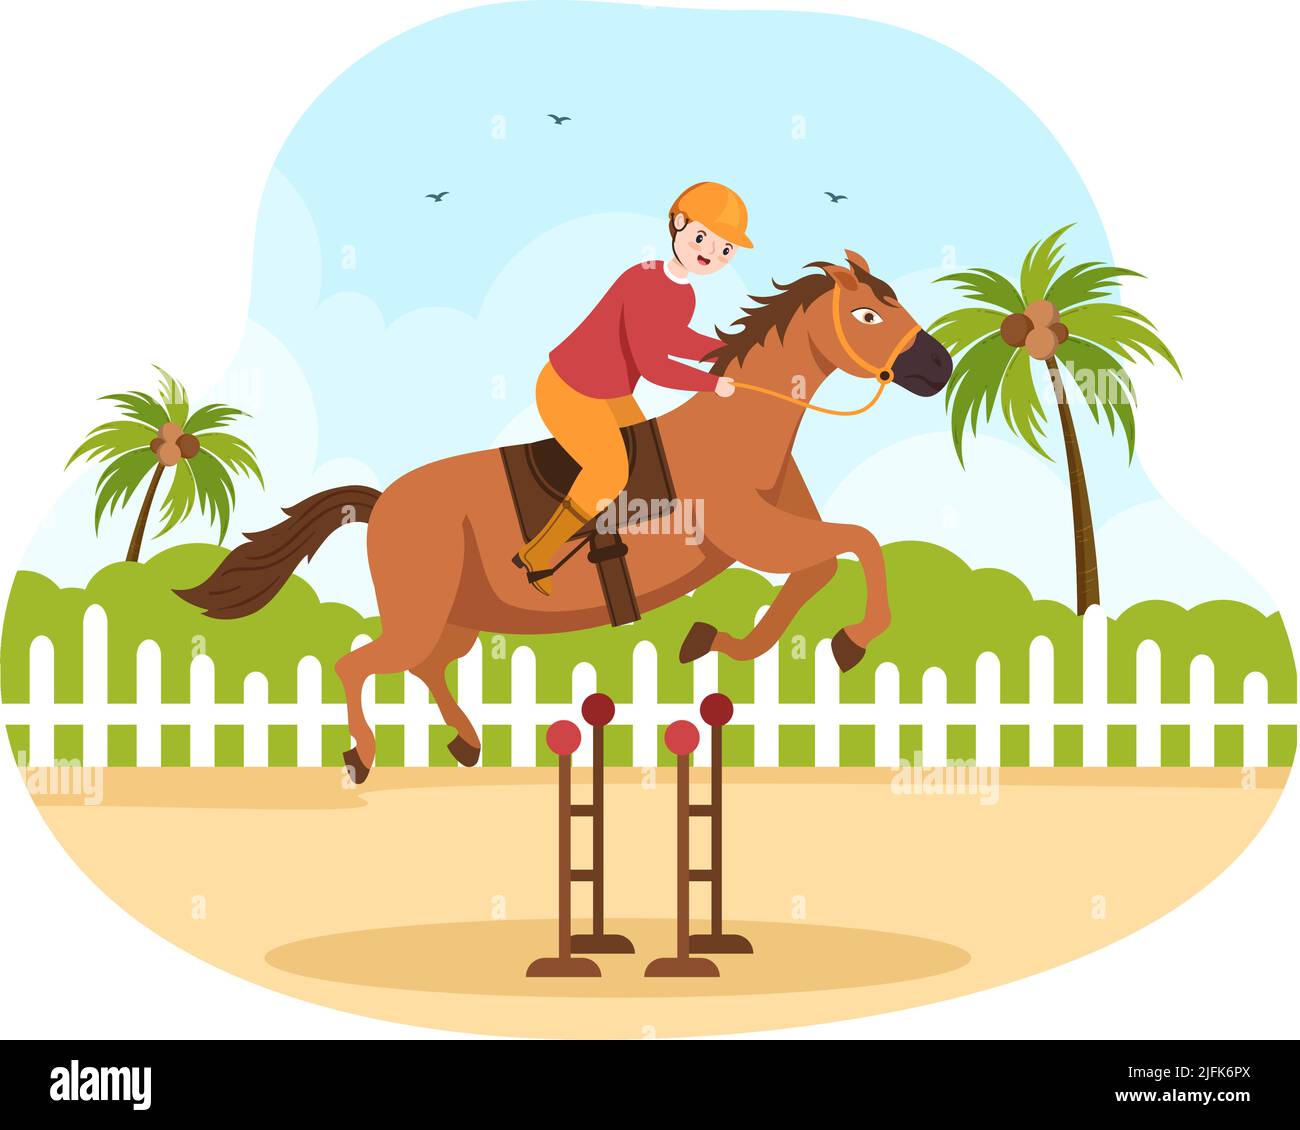 Dessin de la course de chevaux Illustration avec des personnages personnes faisant des championnats de compétition ou des sports équestres dans l'hippodrome Illustration de Vecteur